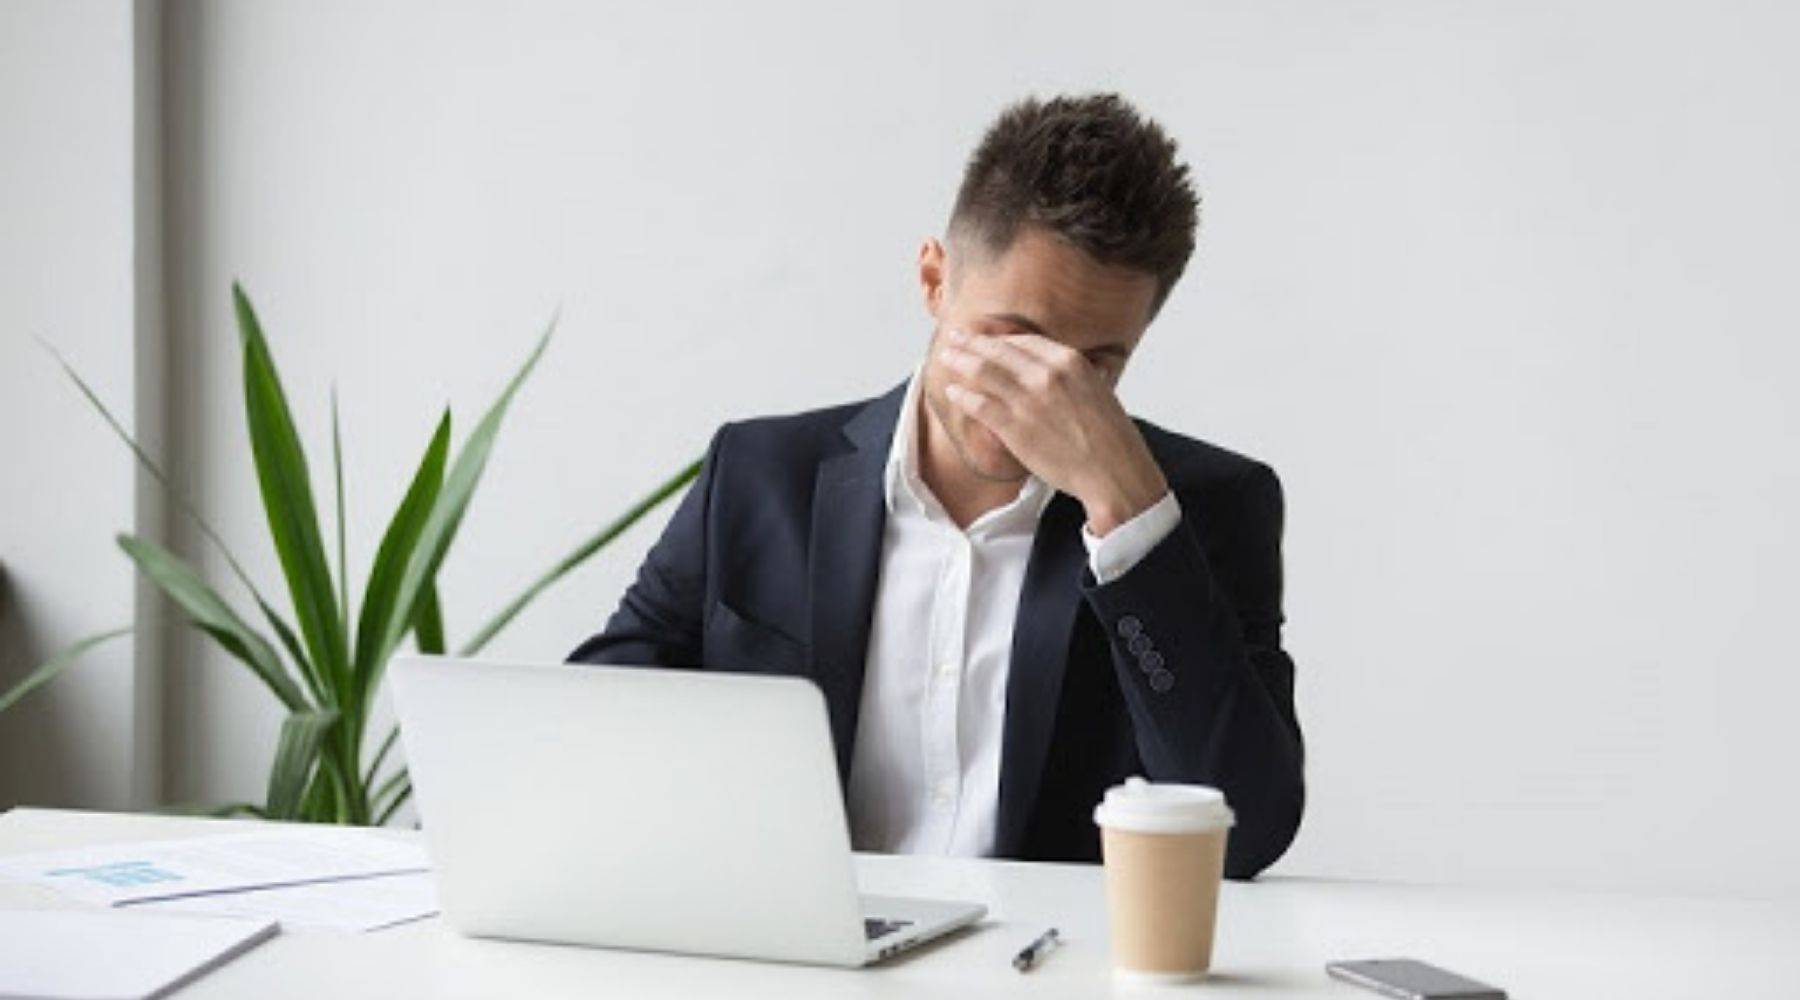 Homme assis devant un ordinateur montrant le syndrome de vision par ordinateur avec inconfort aux yeux et portant un costume buvant une tasse de café